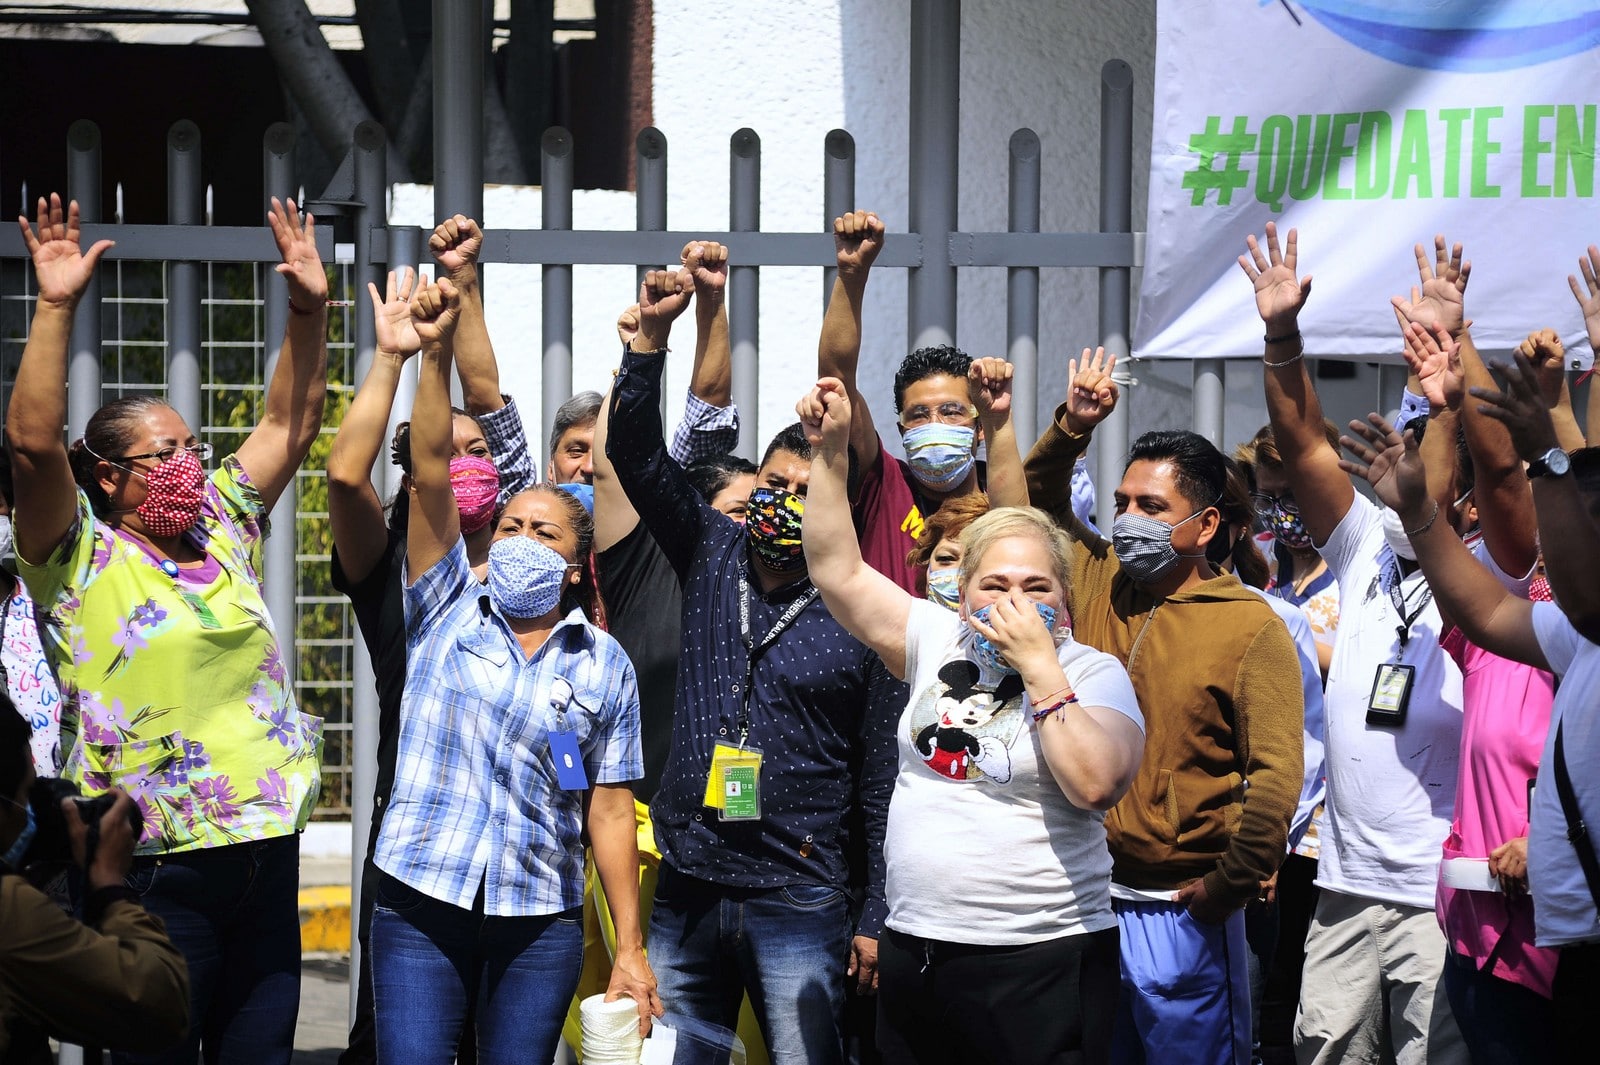 A Mexico, le 16 avril 2020, une manifestation de médecins proteste contre les conditions précaires dans lesquelles ils travaillent,
Auteurs  : Carlos Tischler/REX/SIPA,
Numéro de reportage  : Shutterstock40760493_000047.